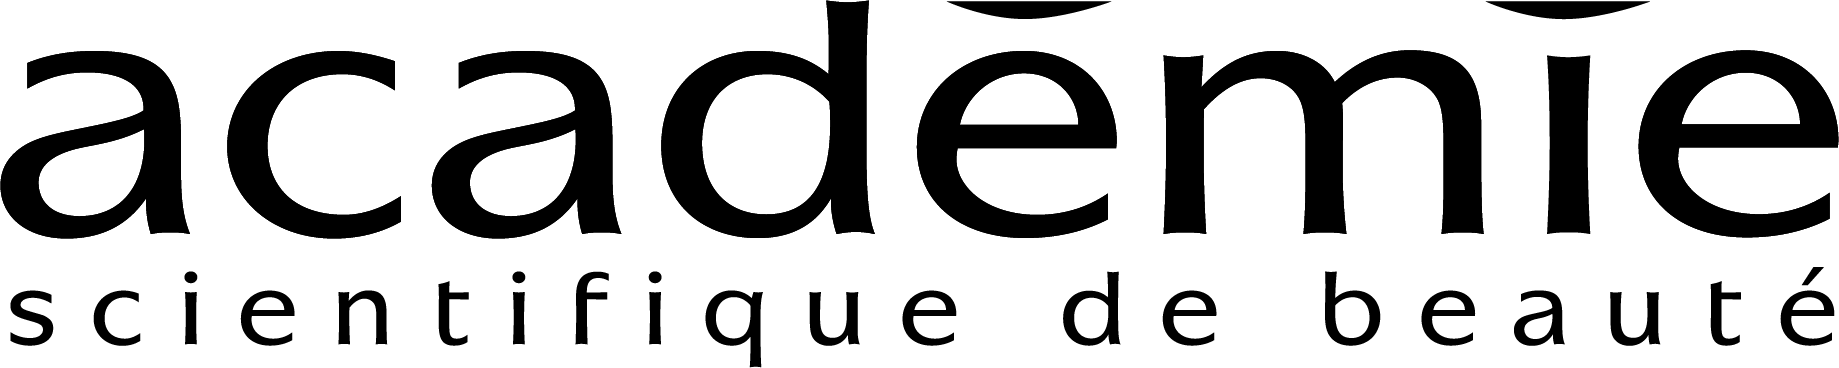 Logo Académie scientifique de beauté